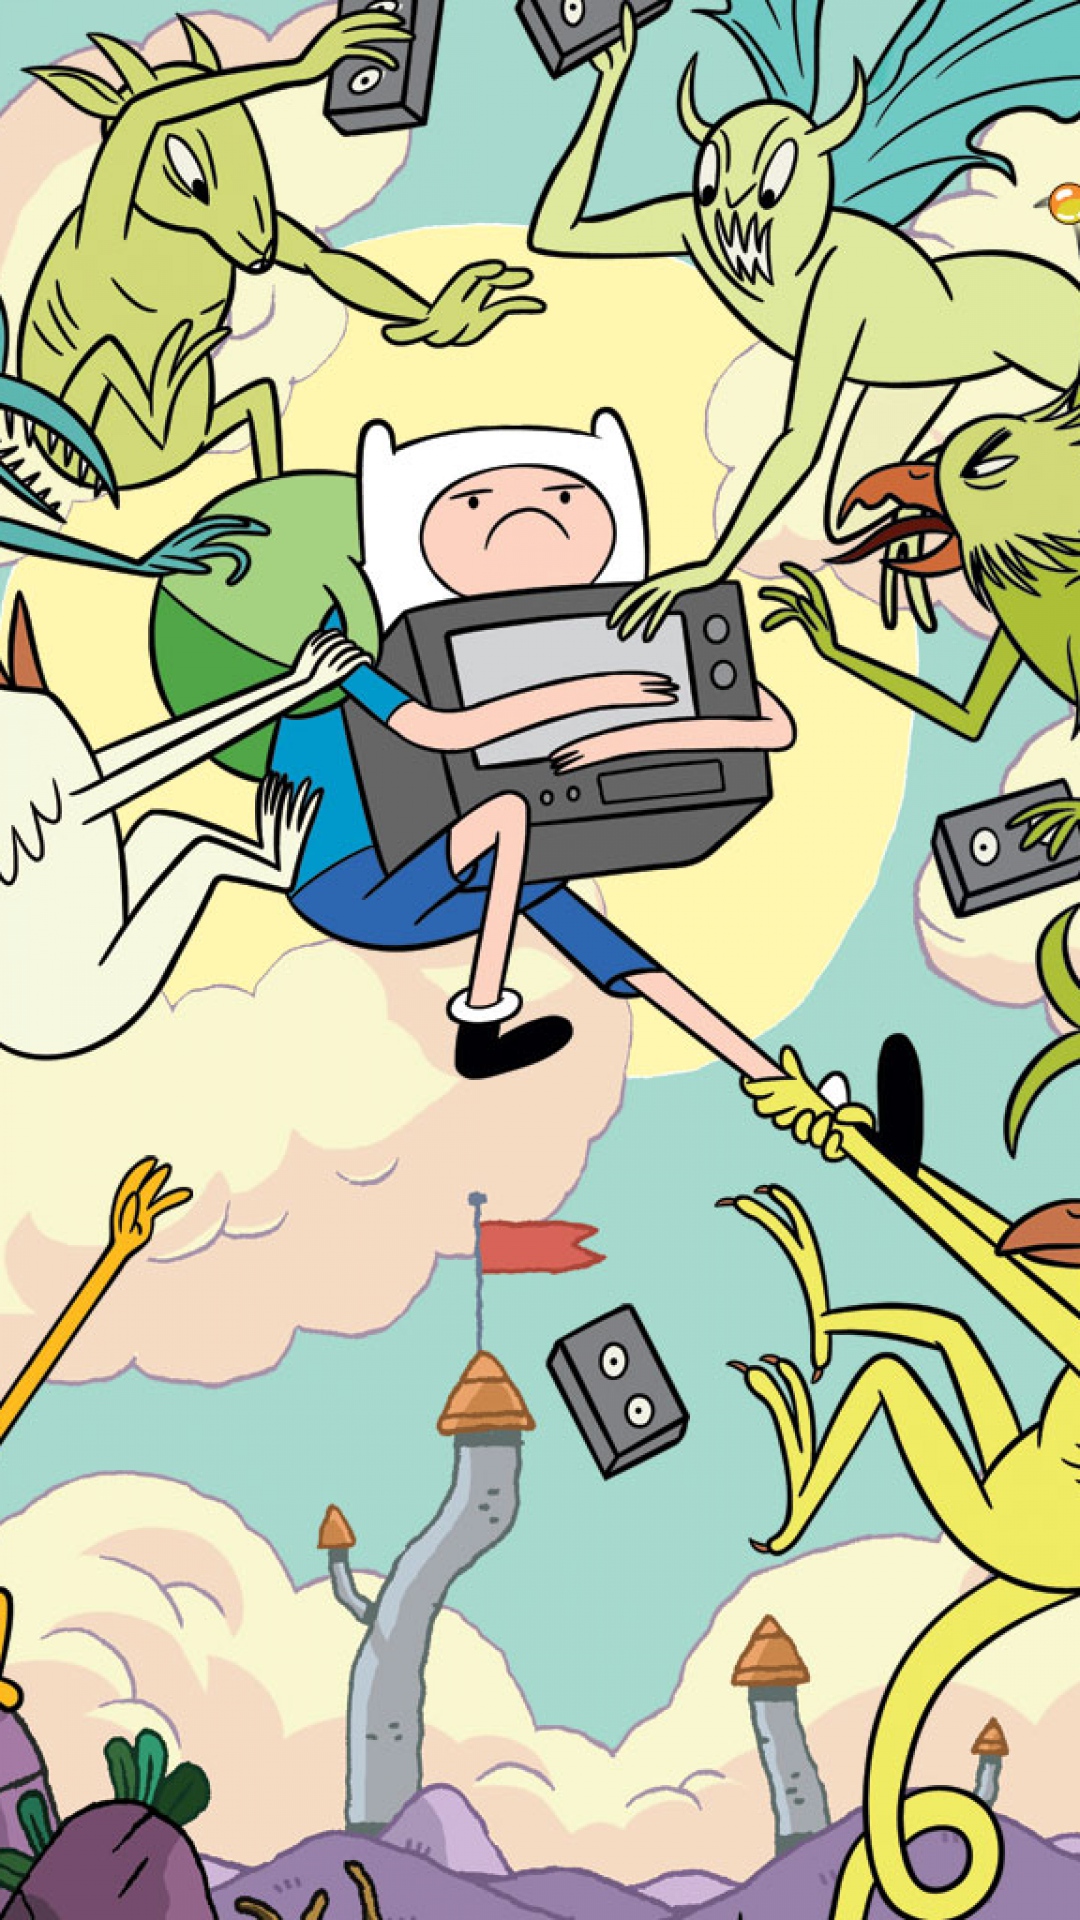 Adventure Time Iphone Wallpapers Hd Pixelstalk Net